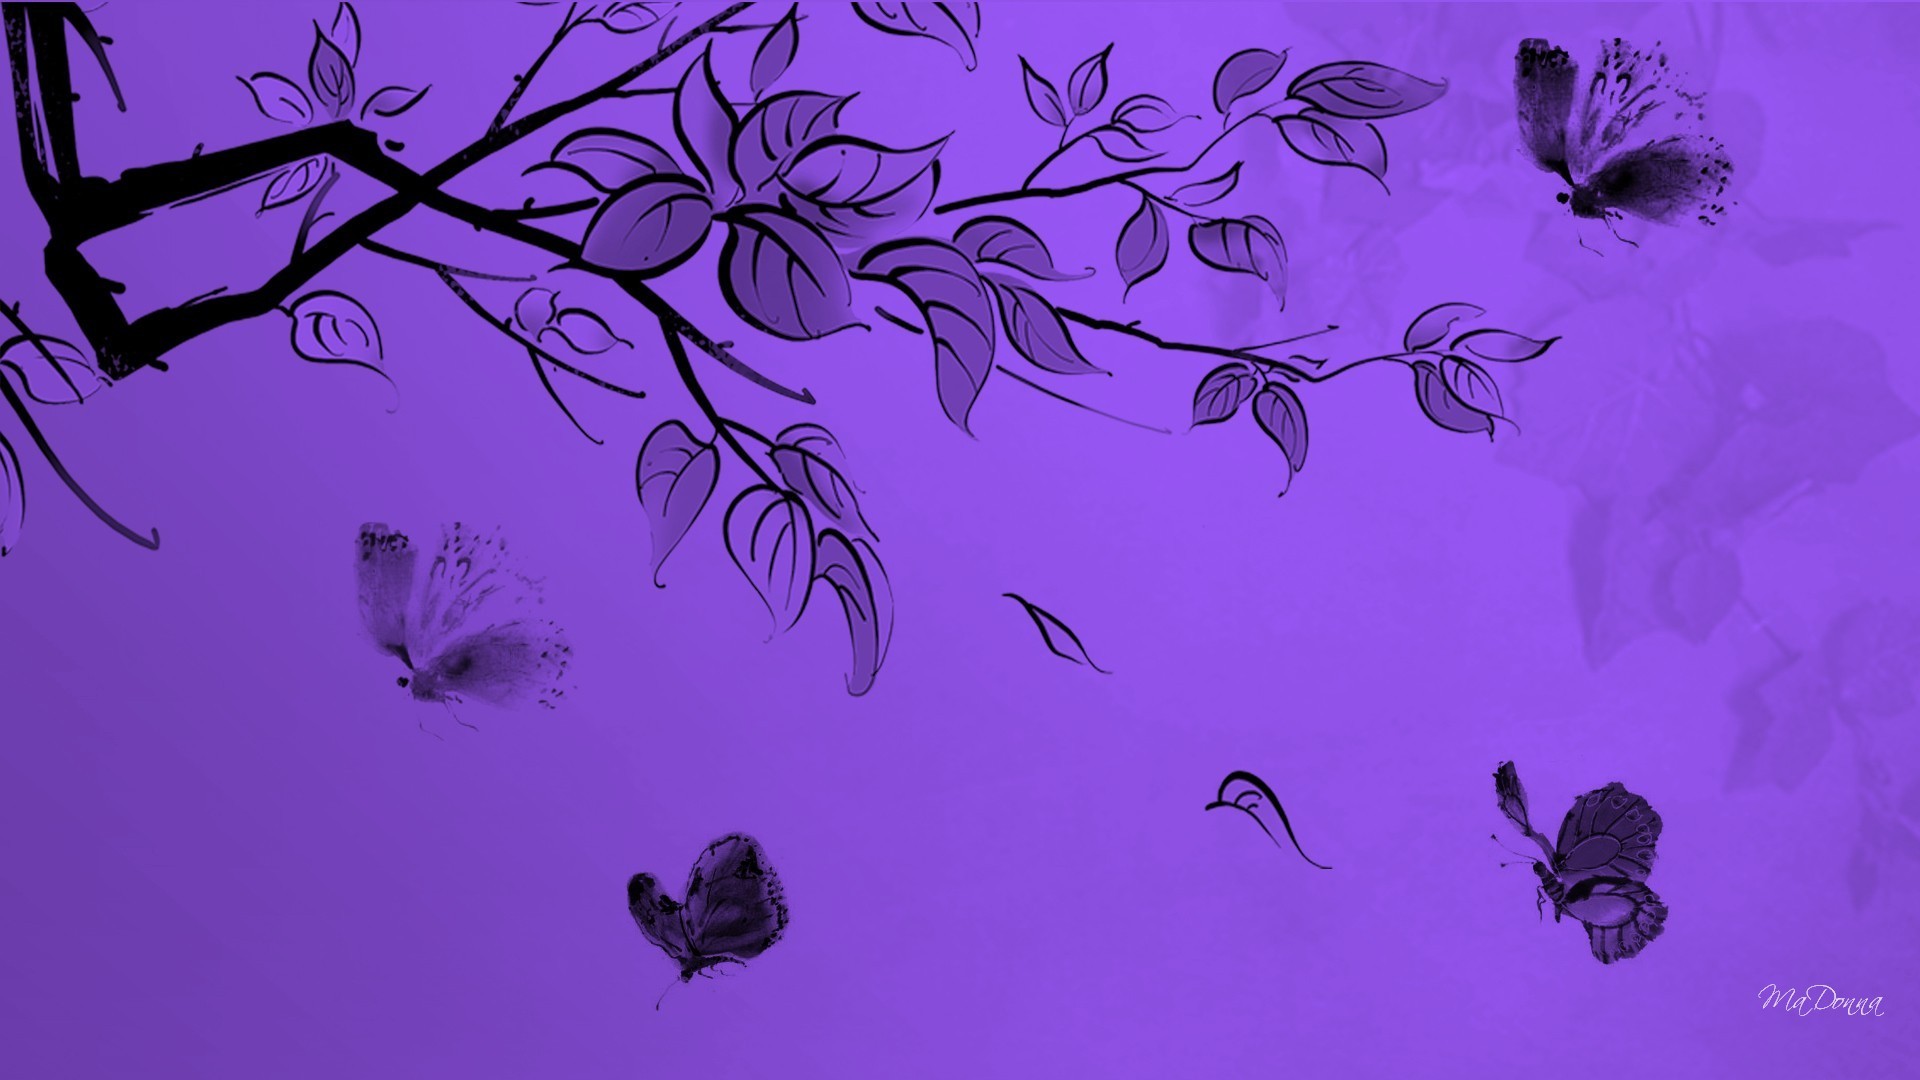 1920x1080 Purple-Butterfly-Free-1920Ã1080-wallpaper-wpt8208366